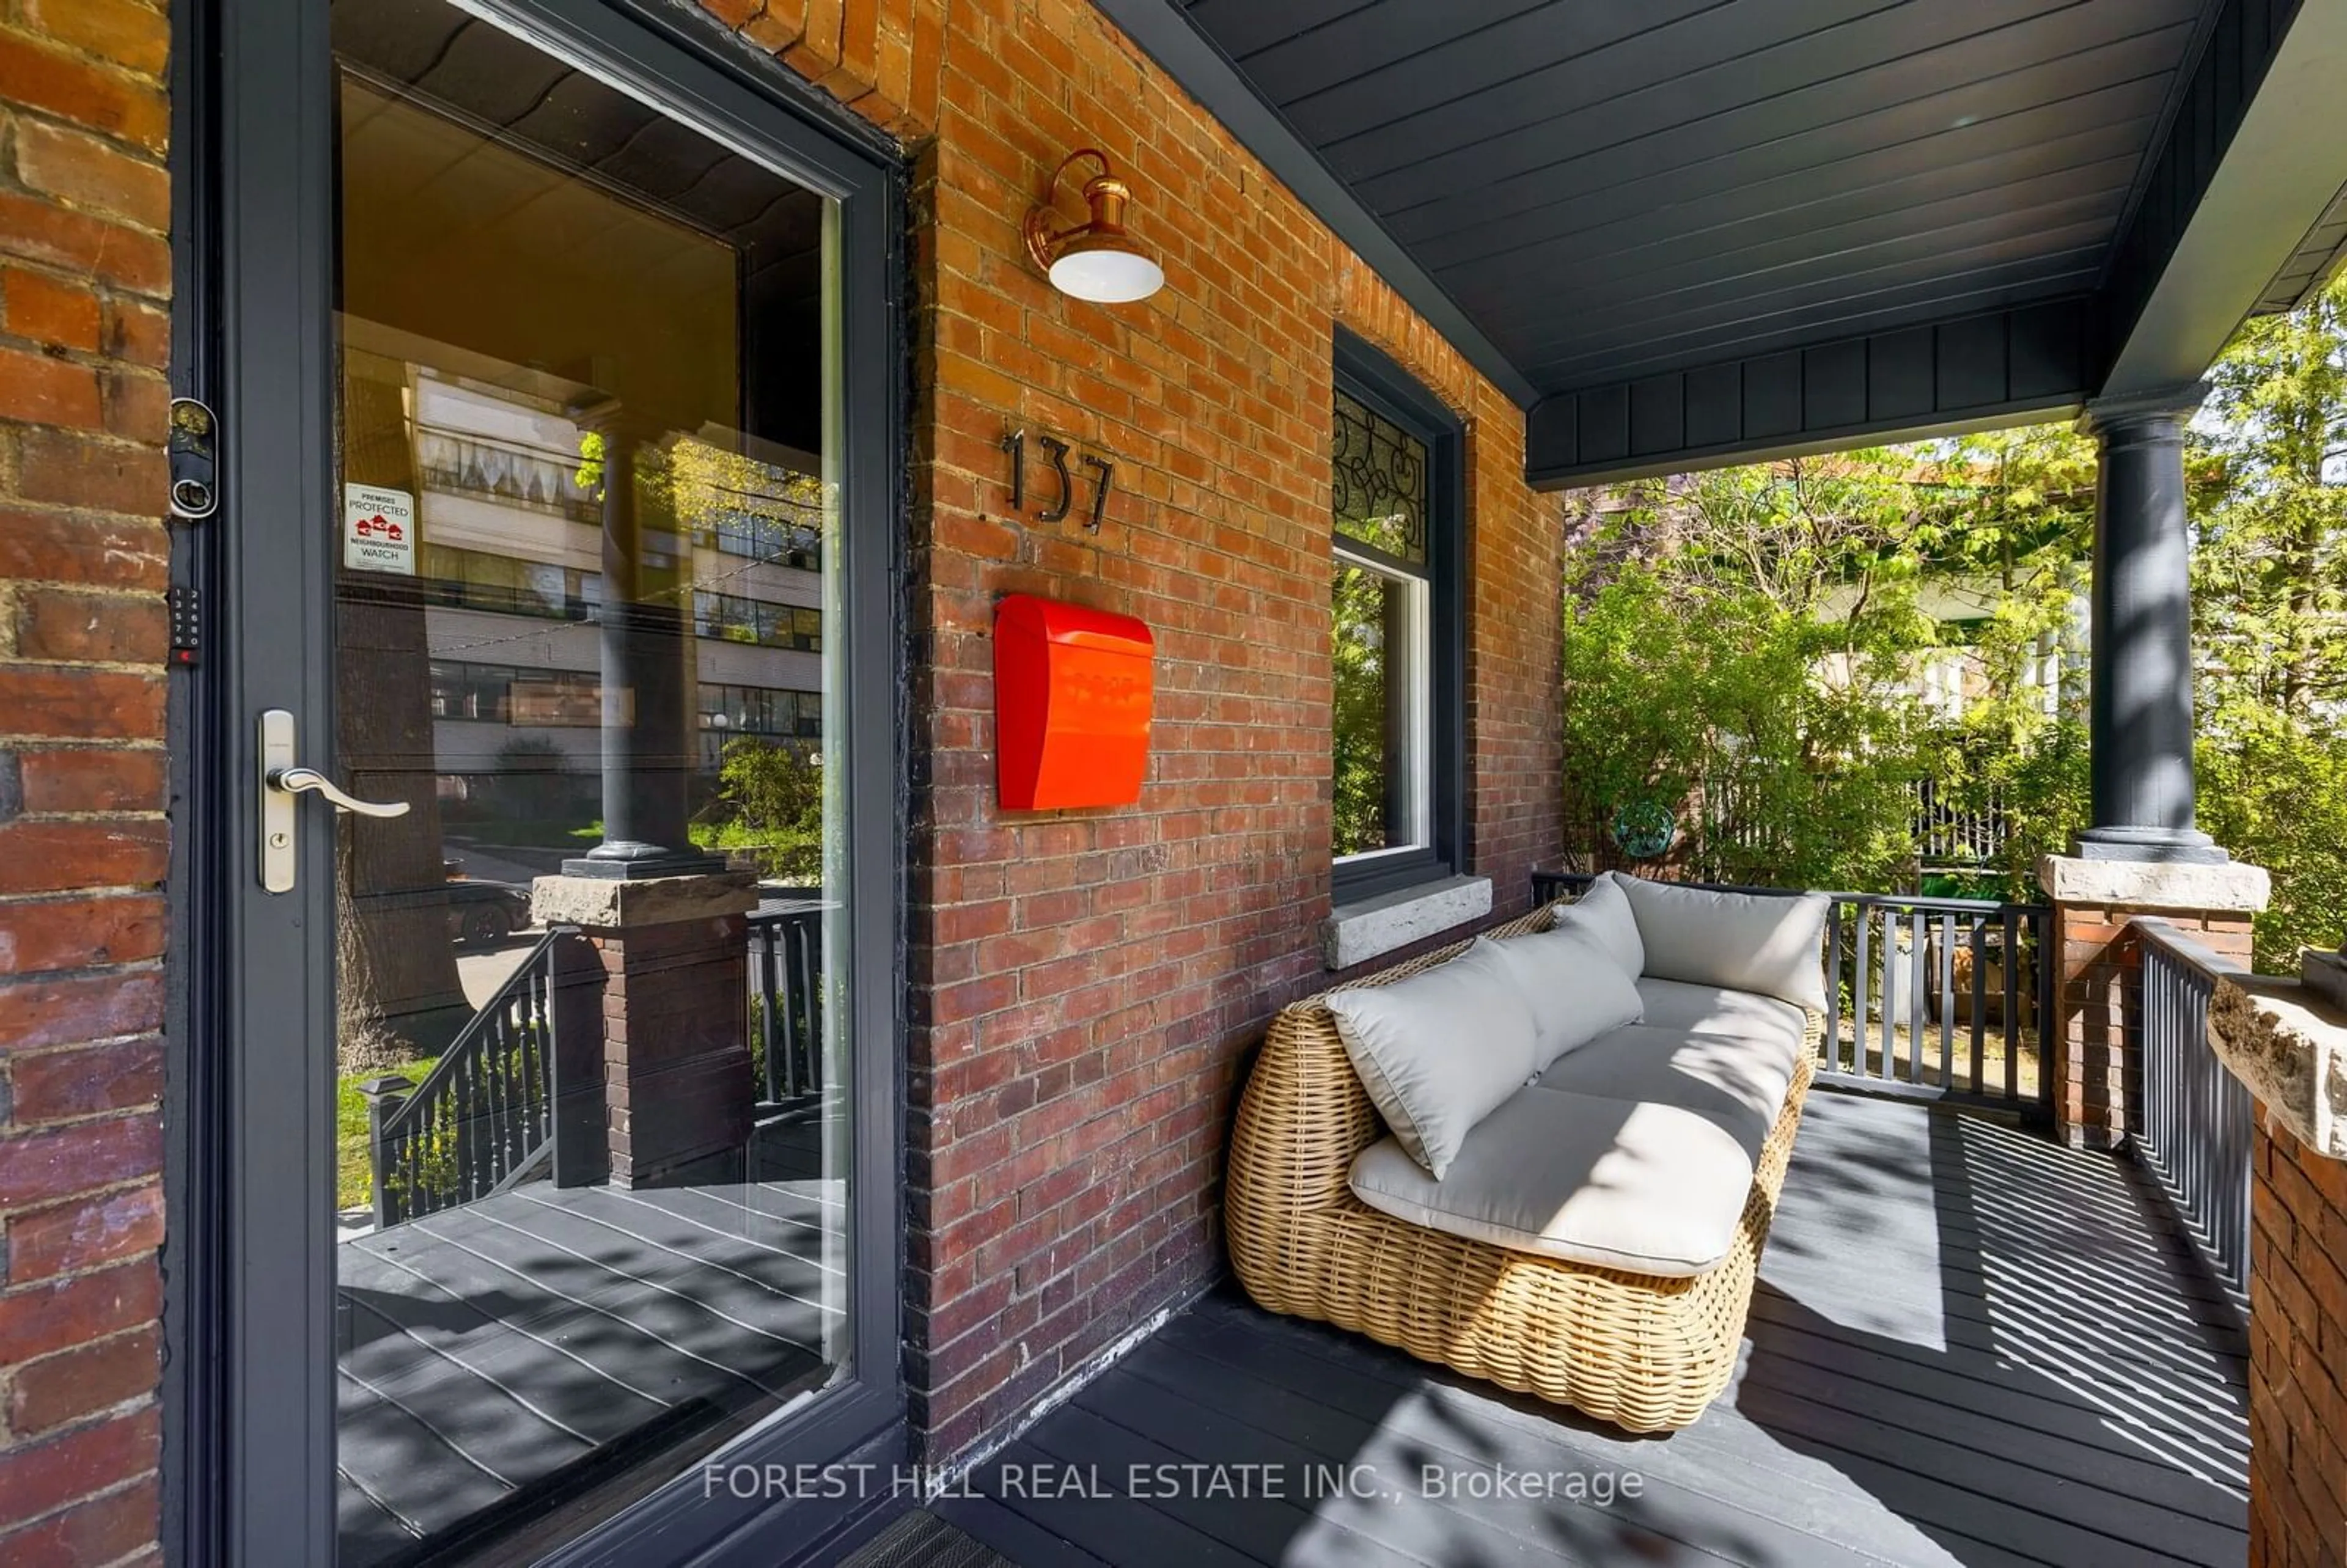 Home with brick exterior material for 137 Springhurst Ave, Toronto Ontario M6K 1B9